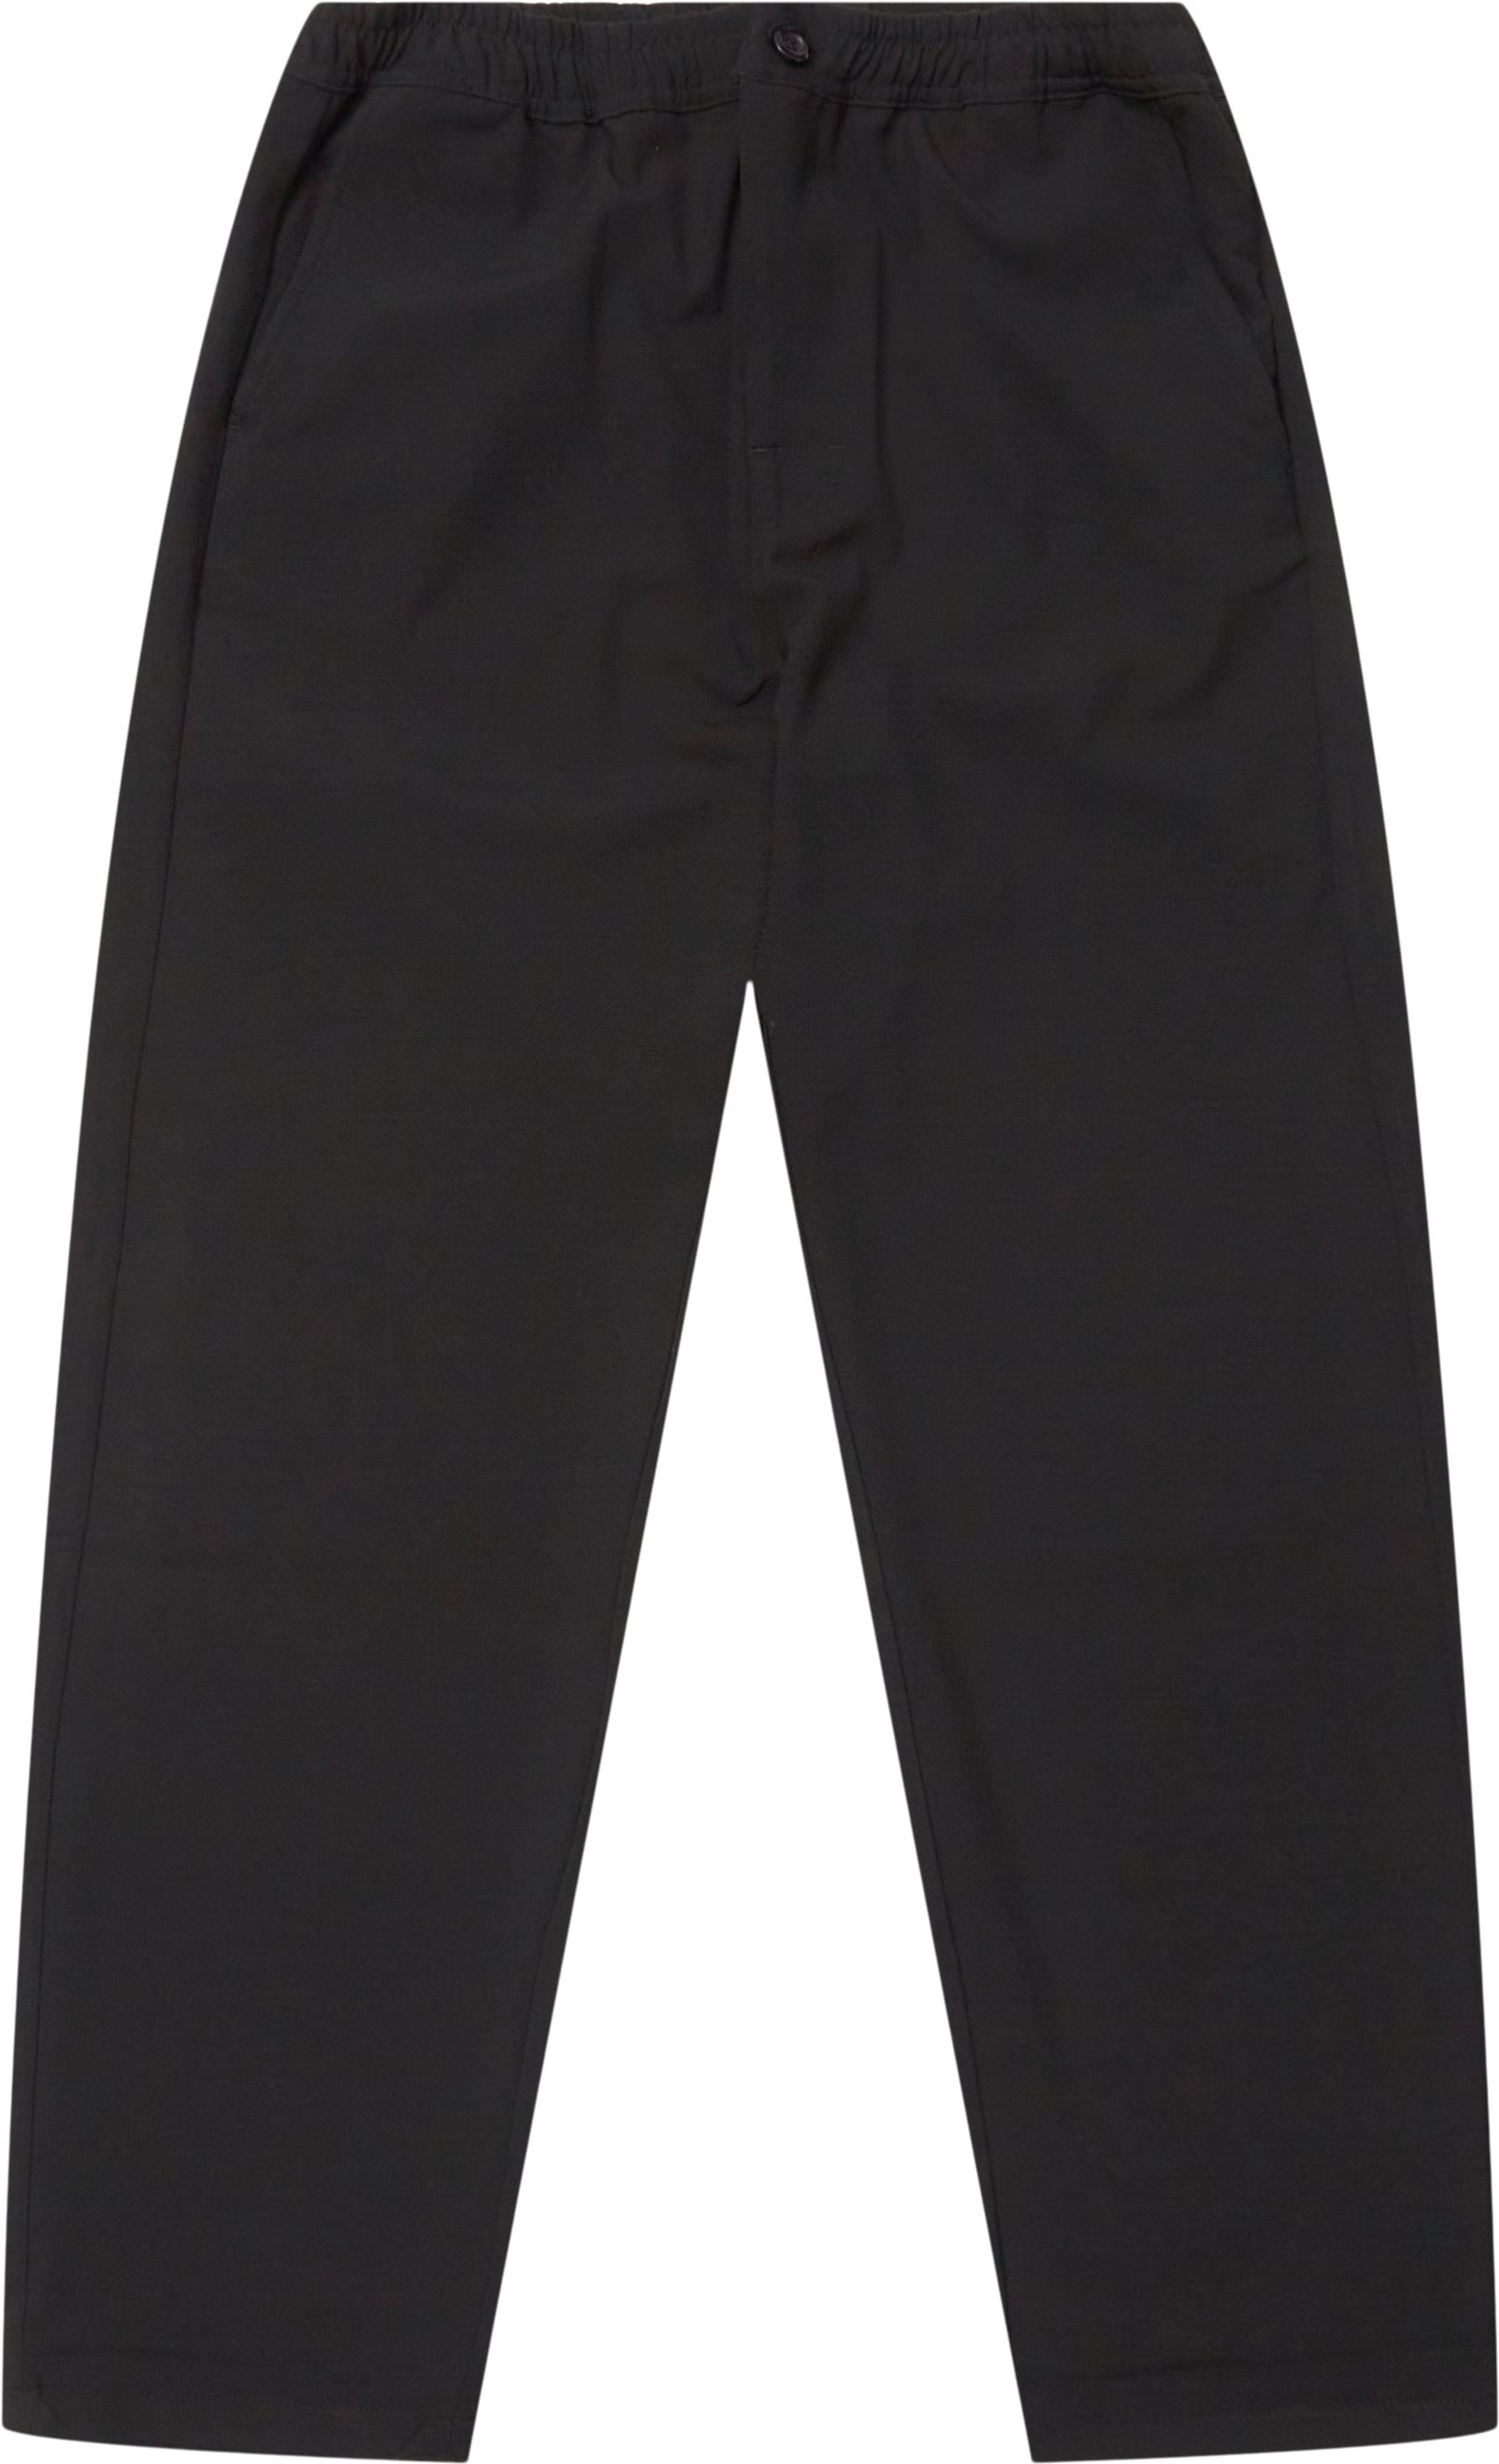 Utah Pants - Byxor - Regular fit - Svart